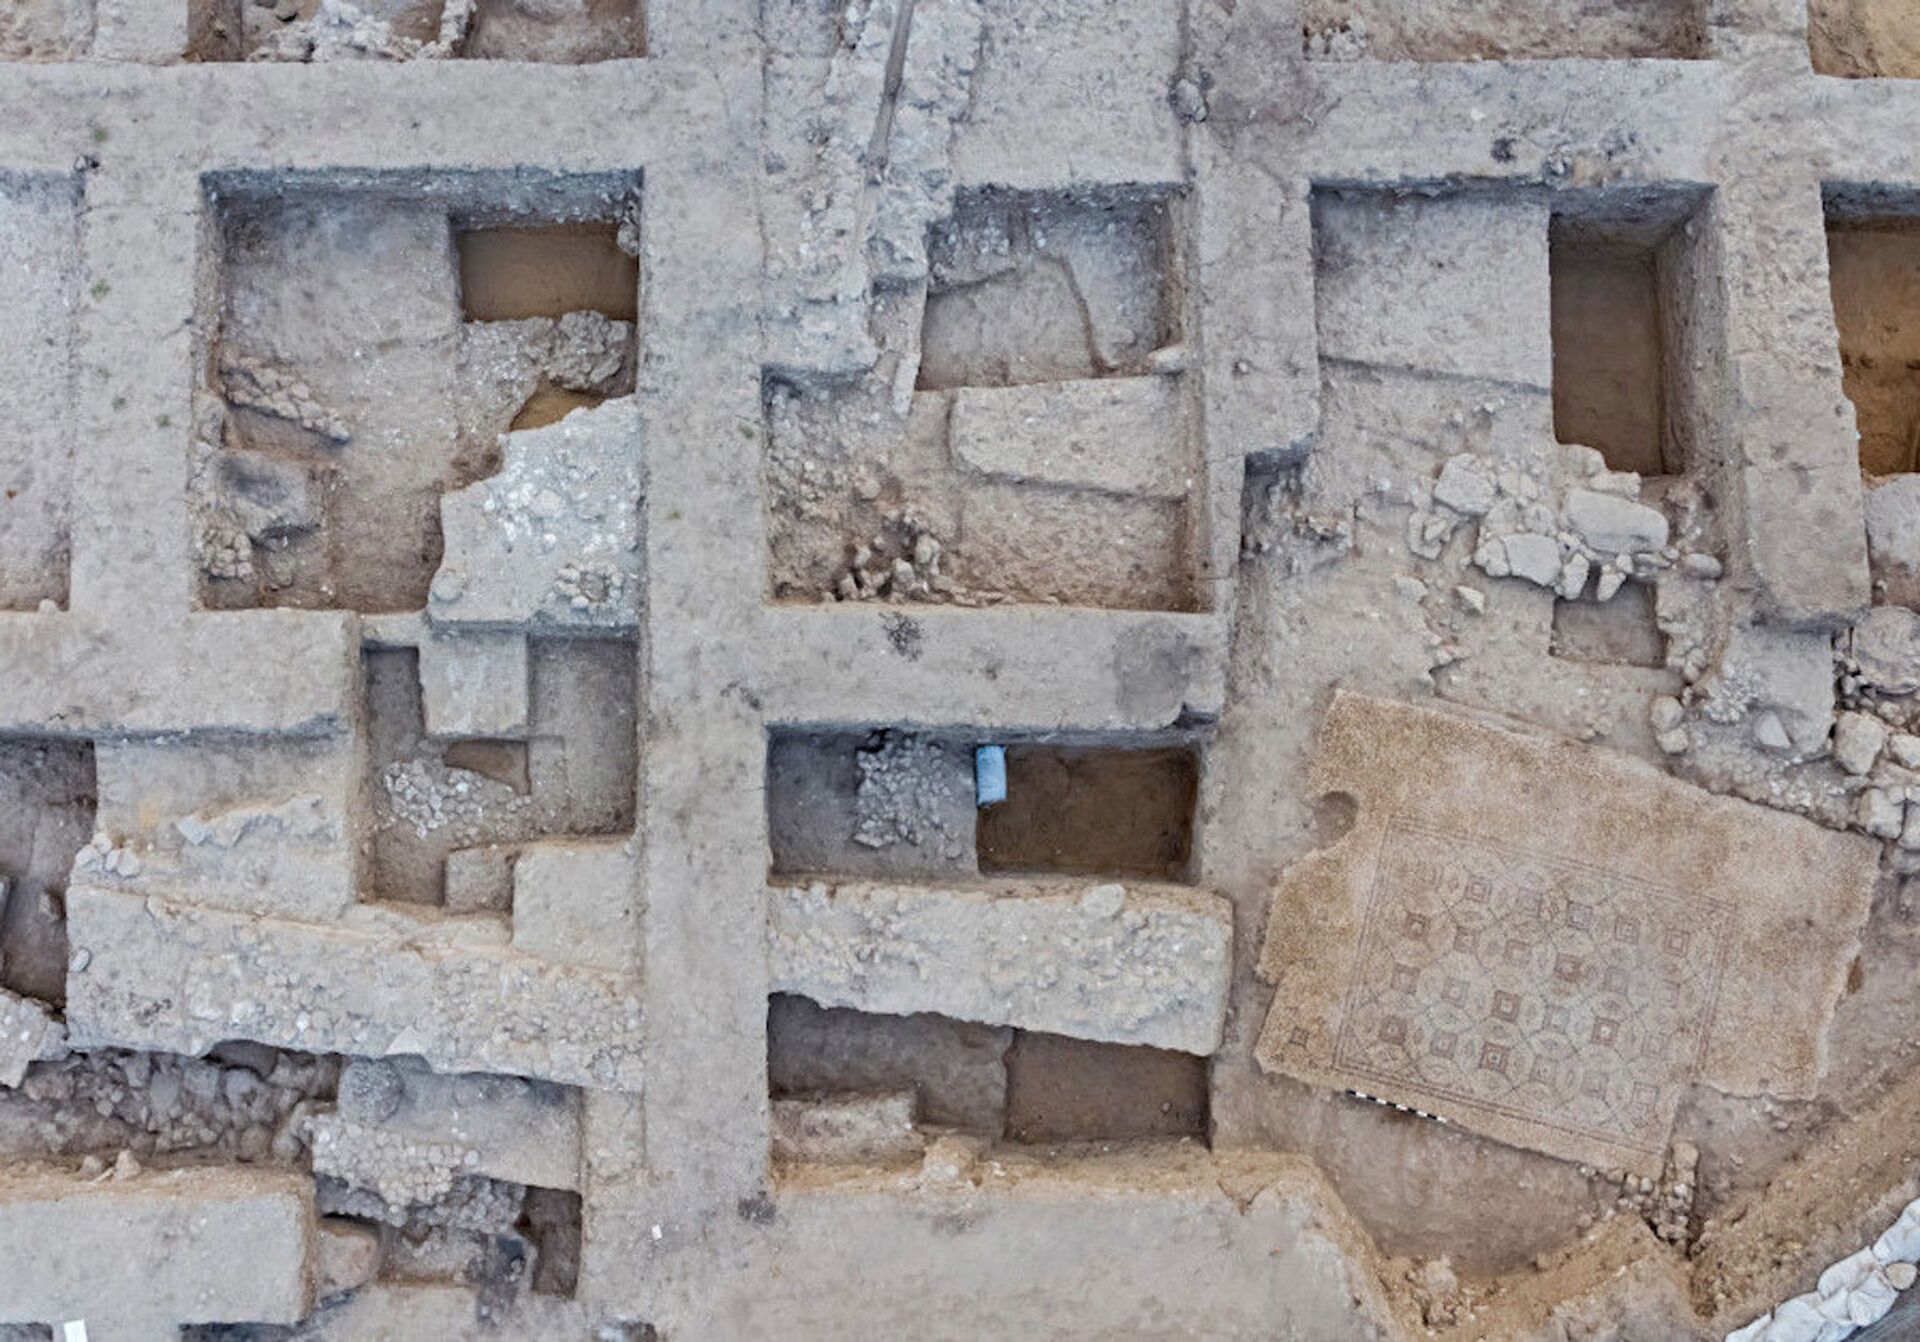 Tapete pomposo: mosaico de cerca de 1.600 anos é desenterrado em cidade israelense (FOTOS) - Sputnik Brasil, 1920, 26.04.2021